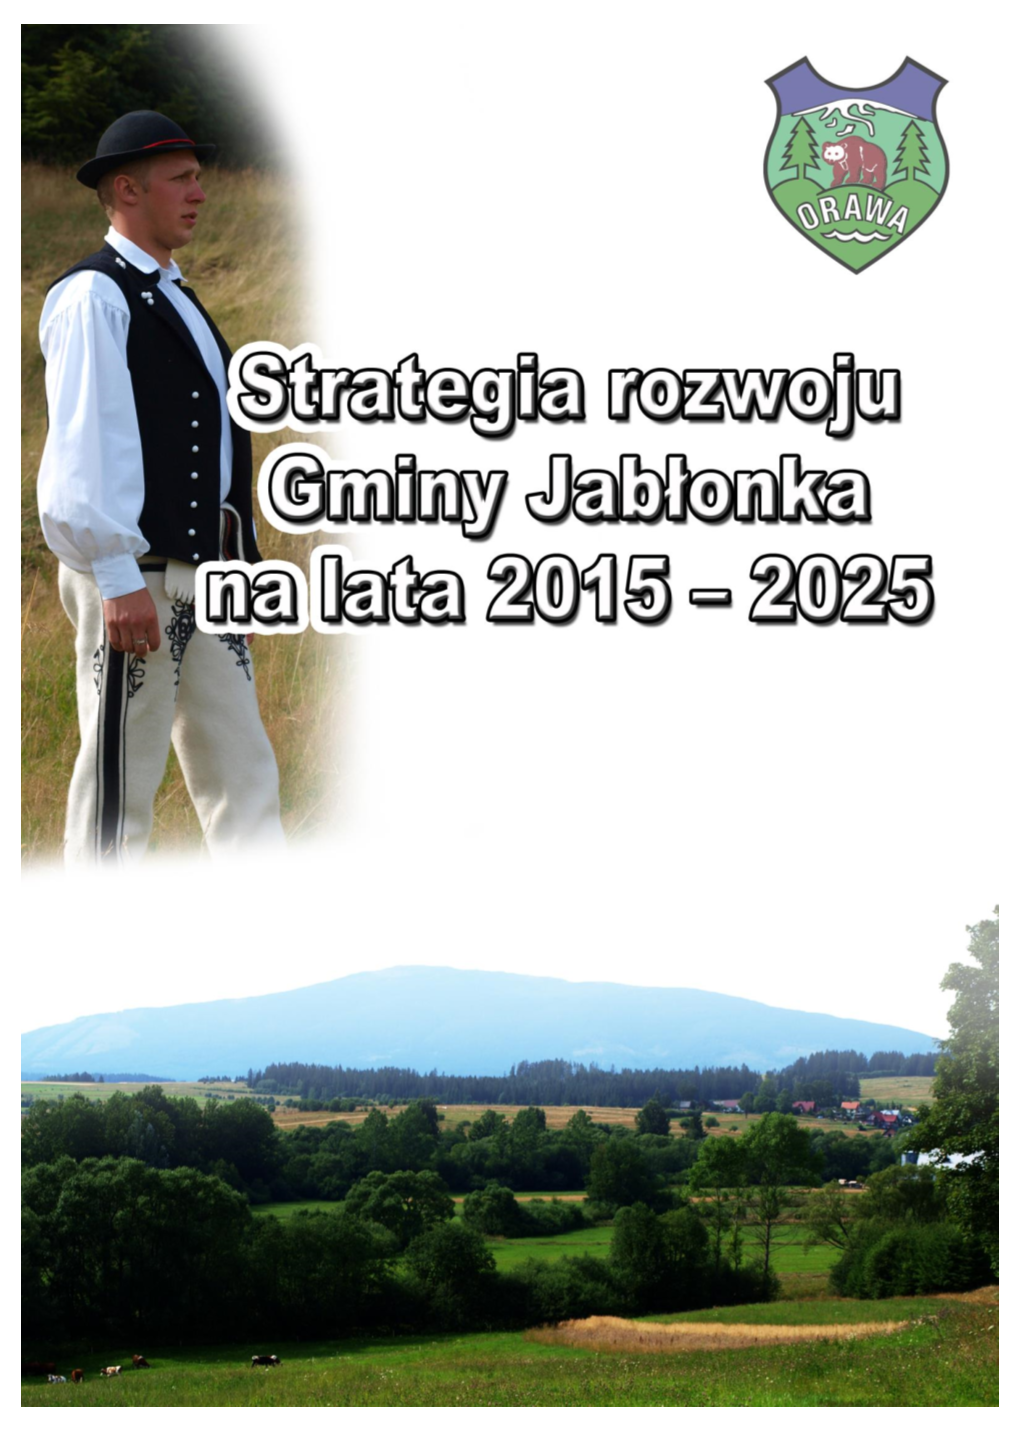 Strategia Rozwoju Gminy Jabłonka Na Lata 2015 - 2025